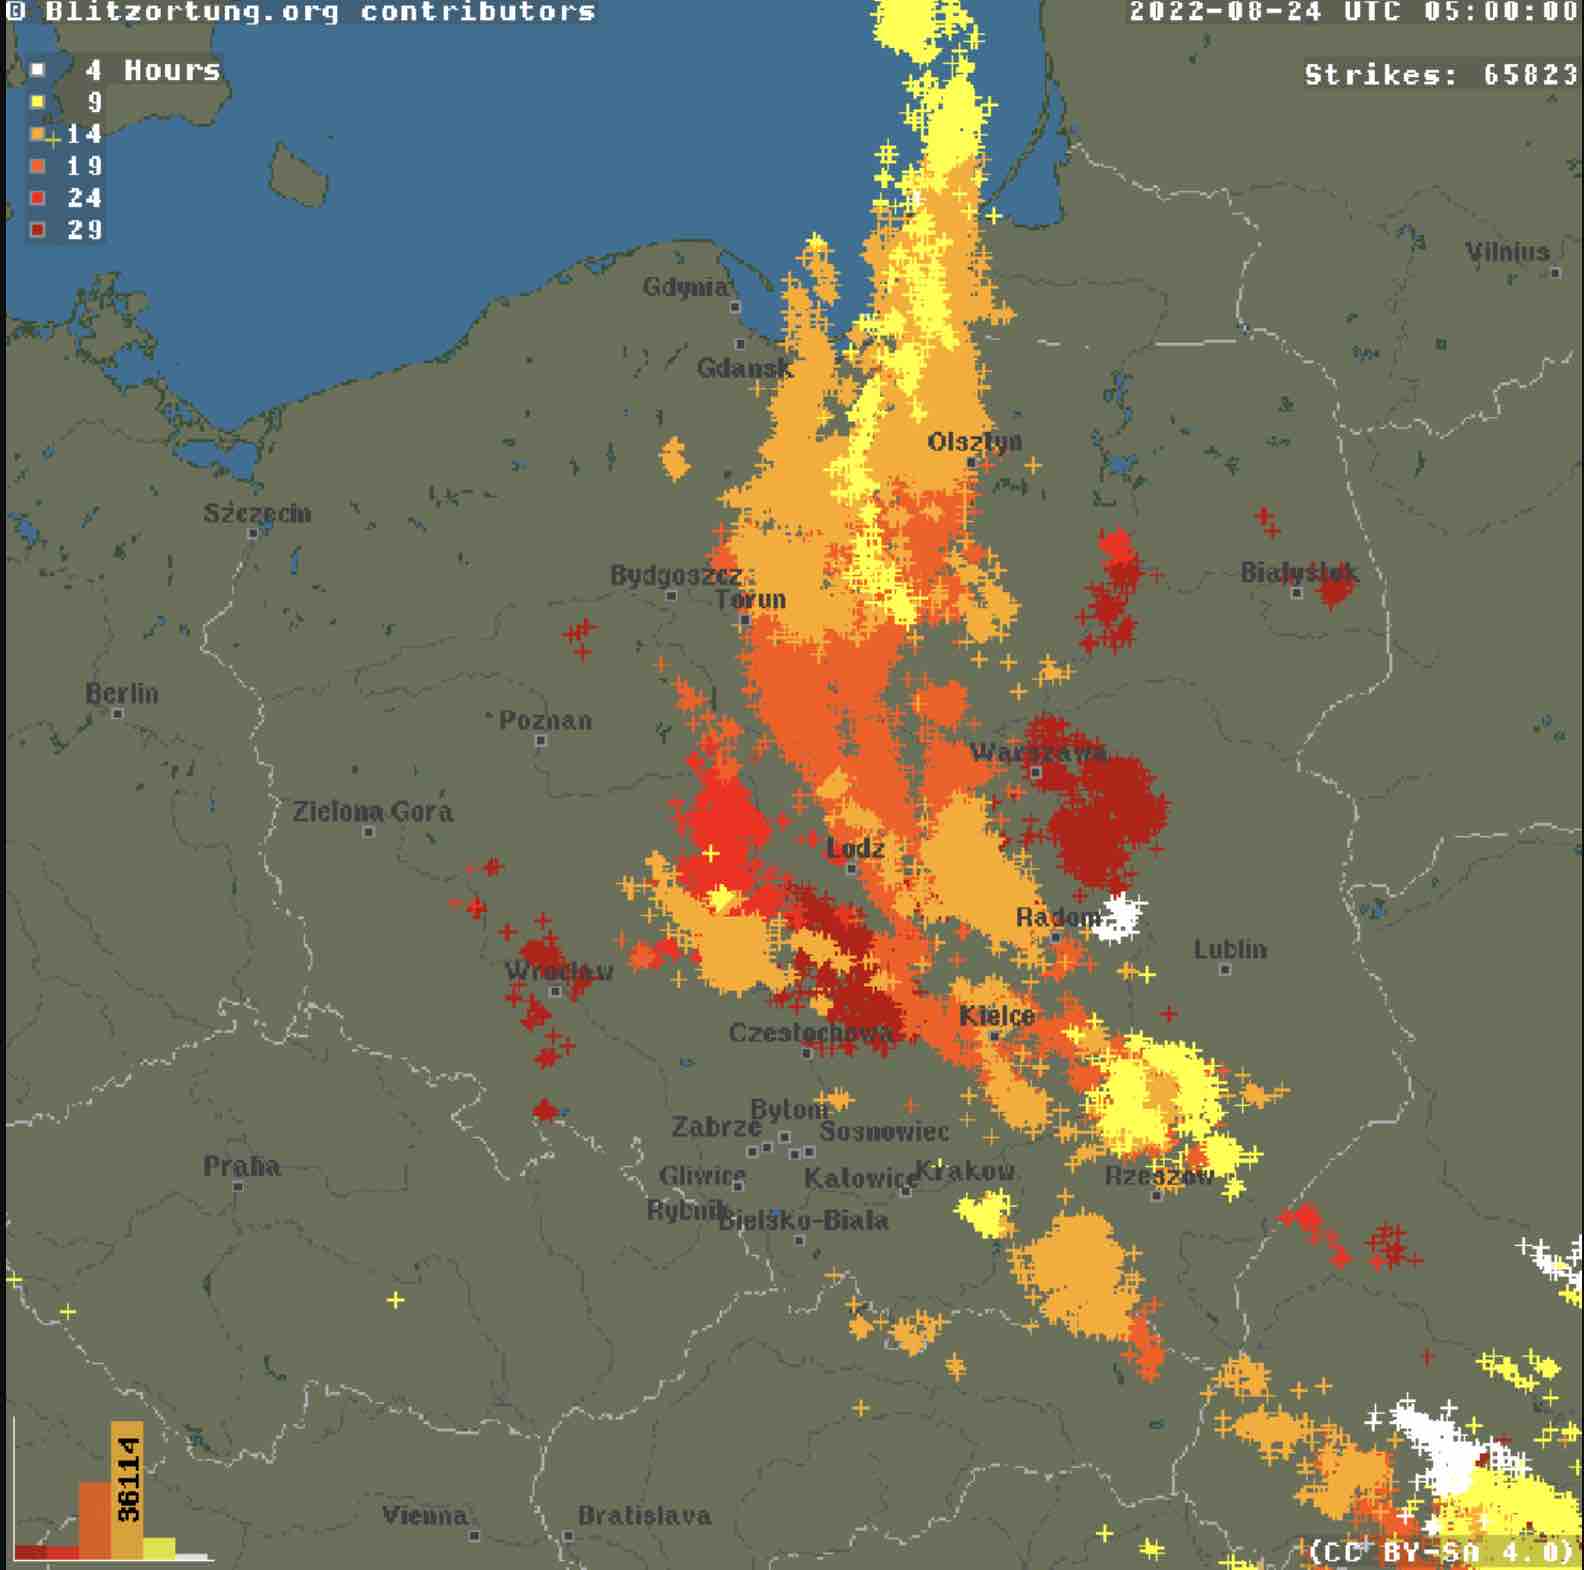 Burze znów pojawią na obszarze woj. lubelskiego. Grad, silne ulewy i miejscowe podtopienia oraz groźny wiatr